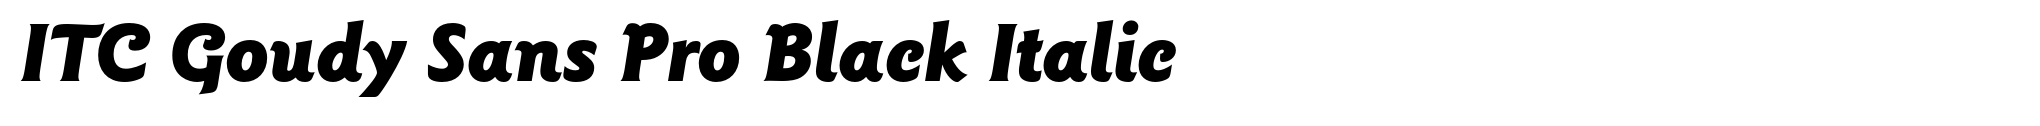 ITC Goudy Sans Pro Black Italic image